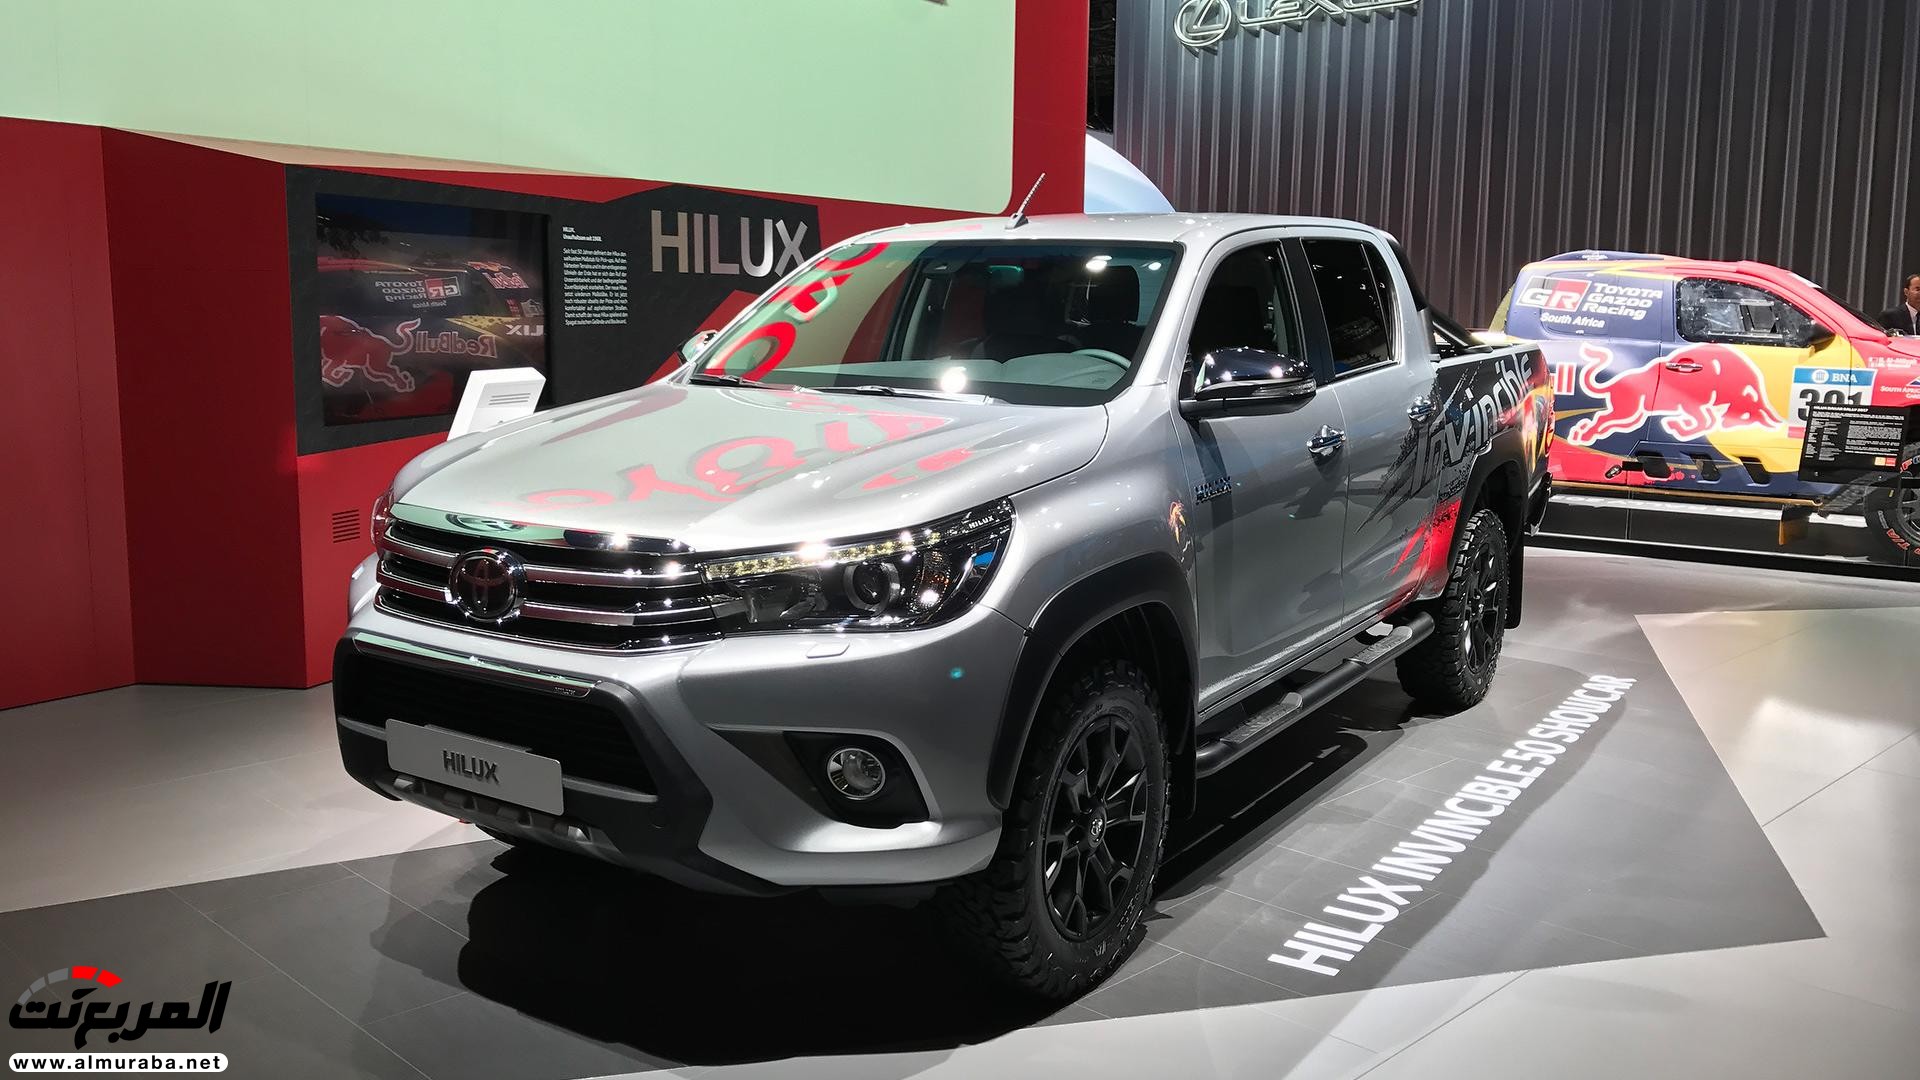 تويوتا هايلكس 2018 الاصدار الخاص بمناسبة مرور 50 عام "تقرير وصور" Toyota Hilux 55